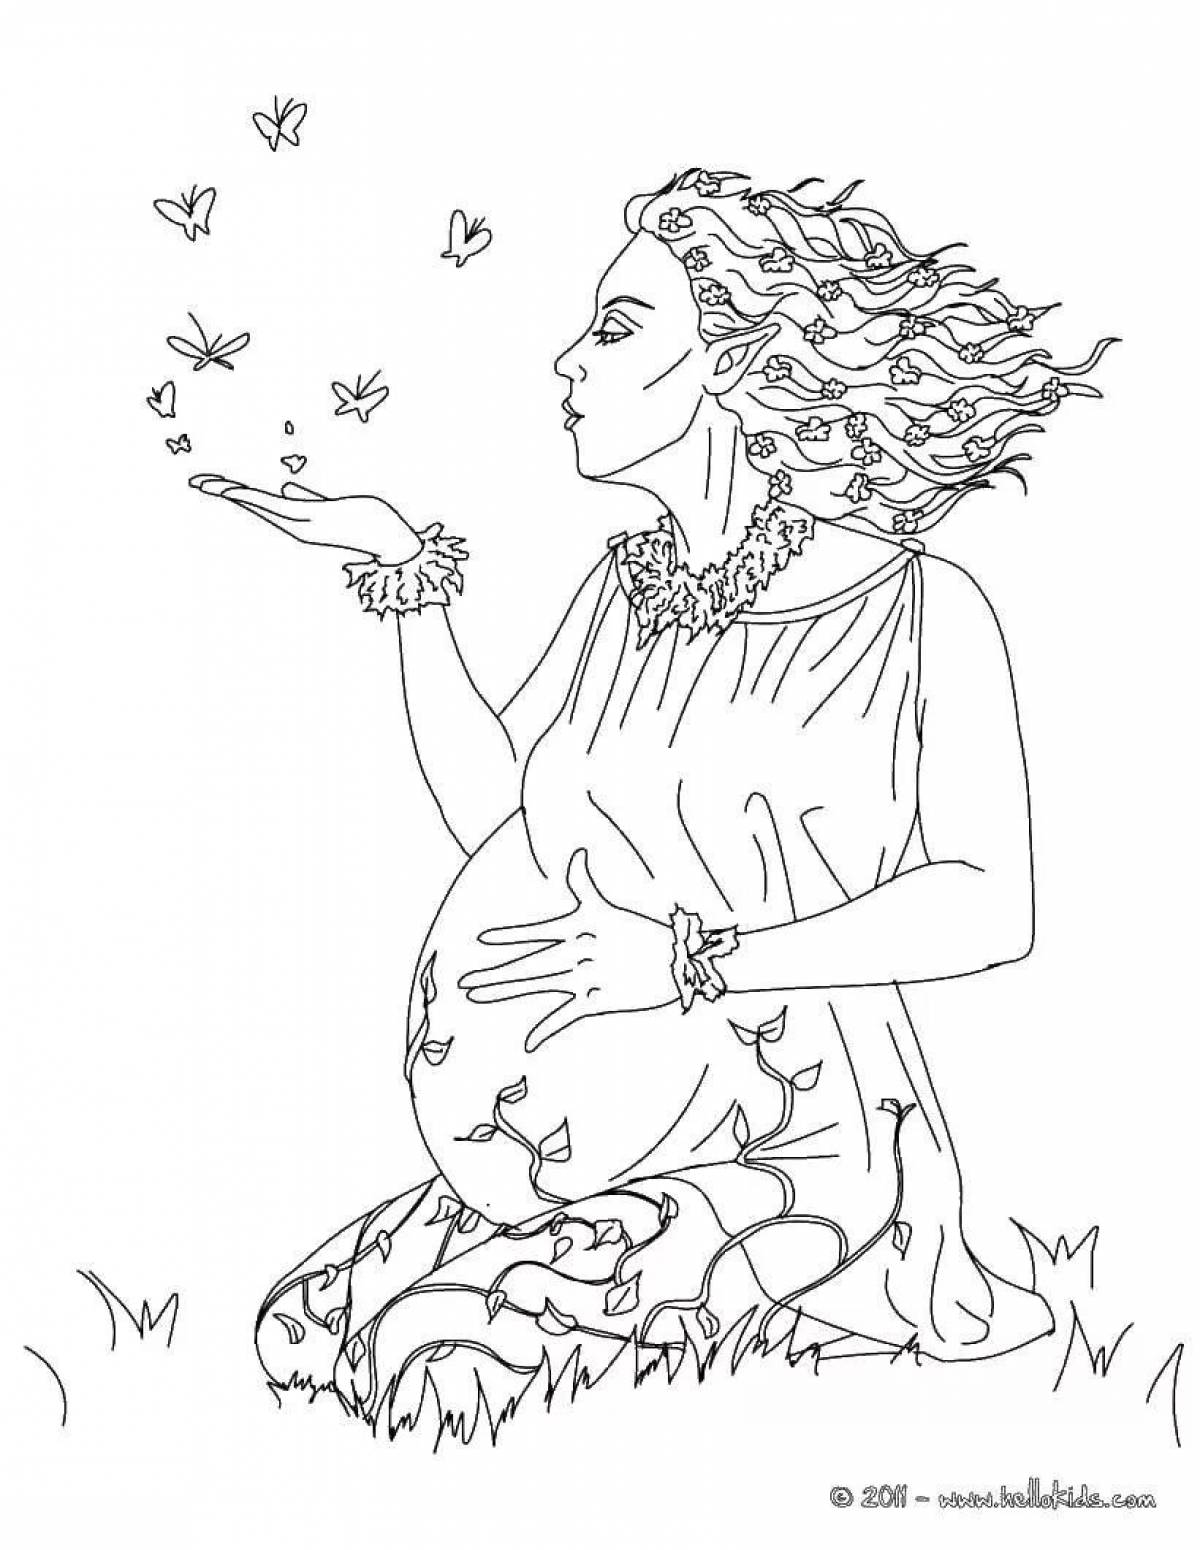 Elegant maternity coloring book